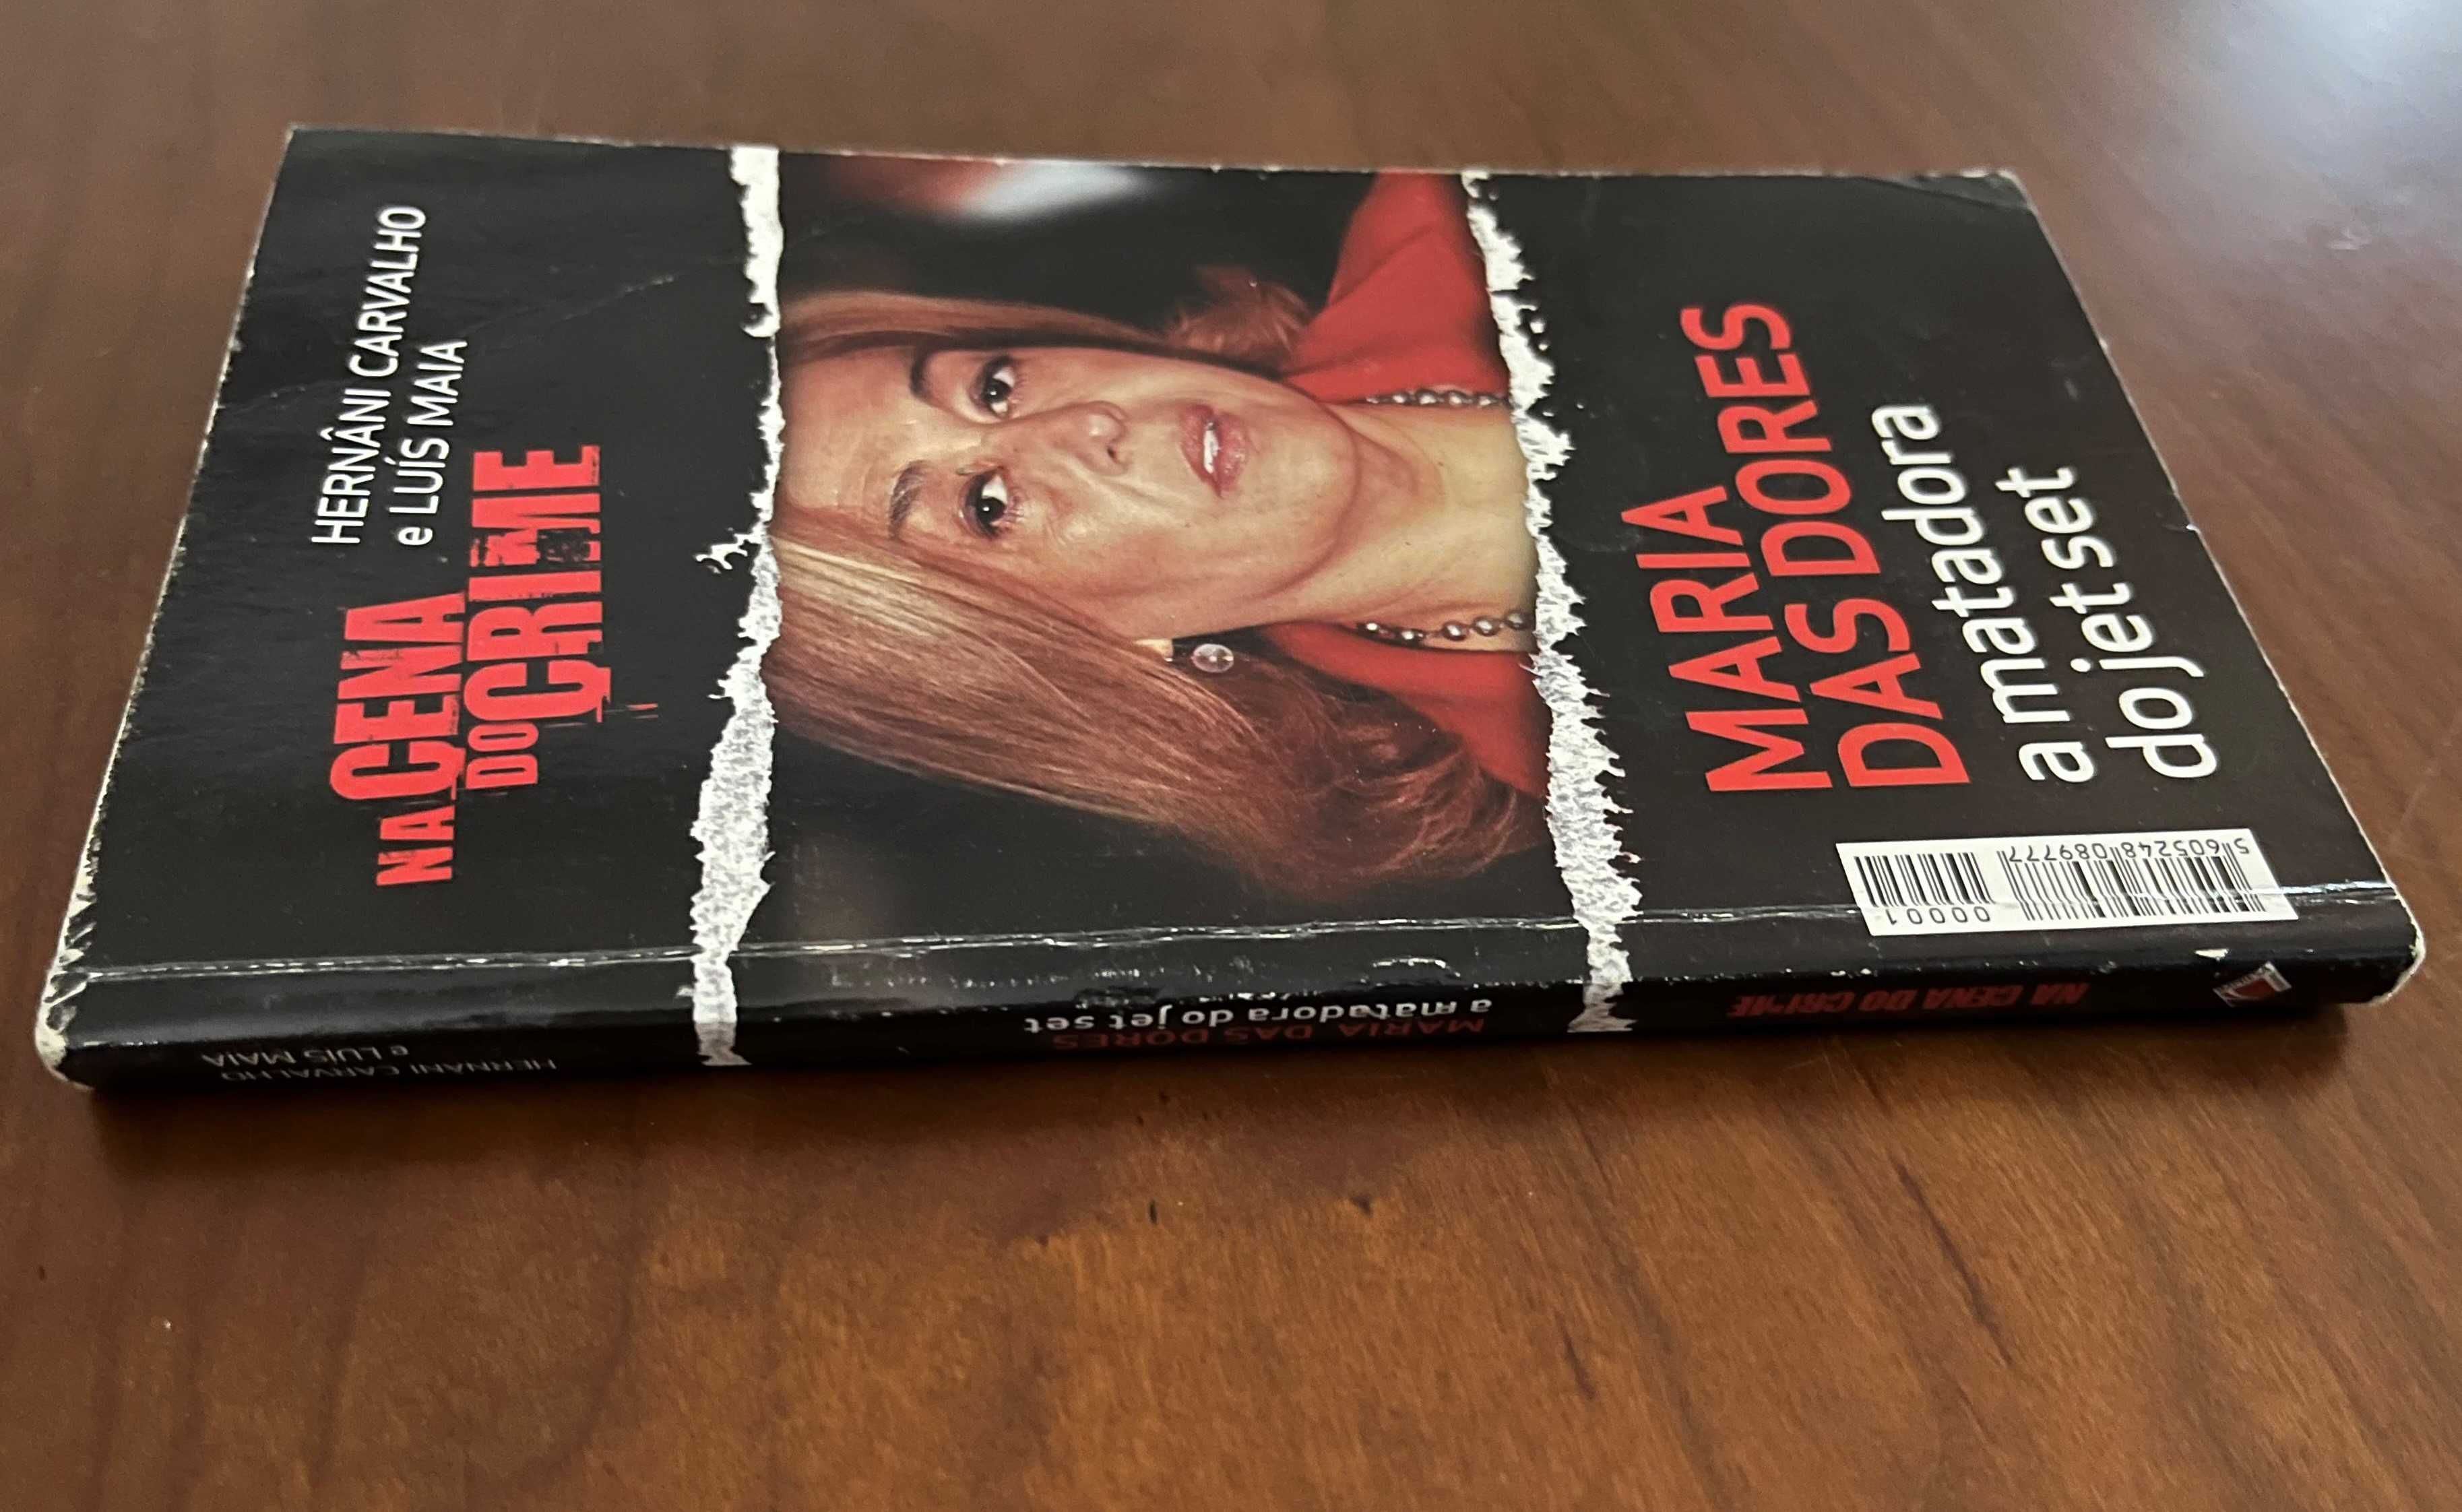 Livro "Maria Das Dores - A matadora do jet set"